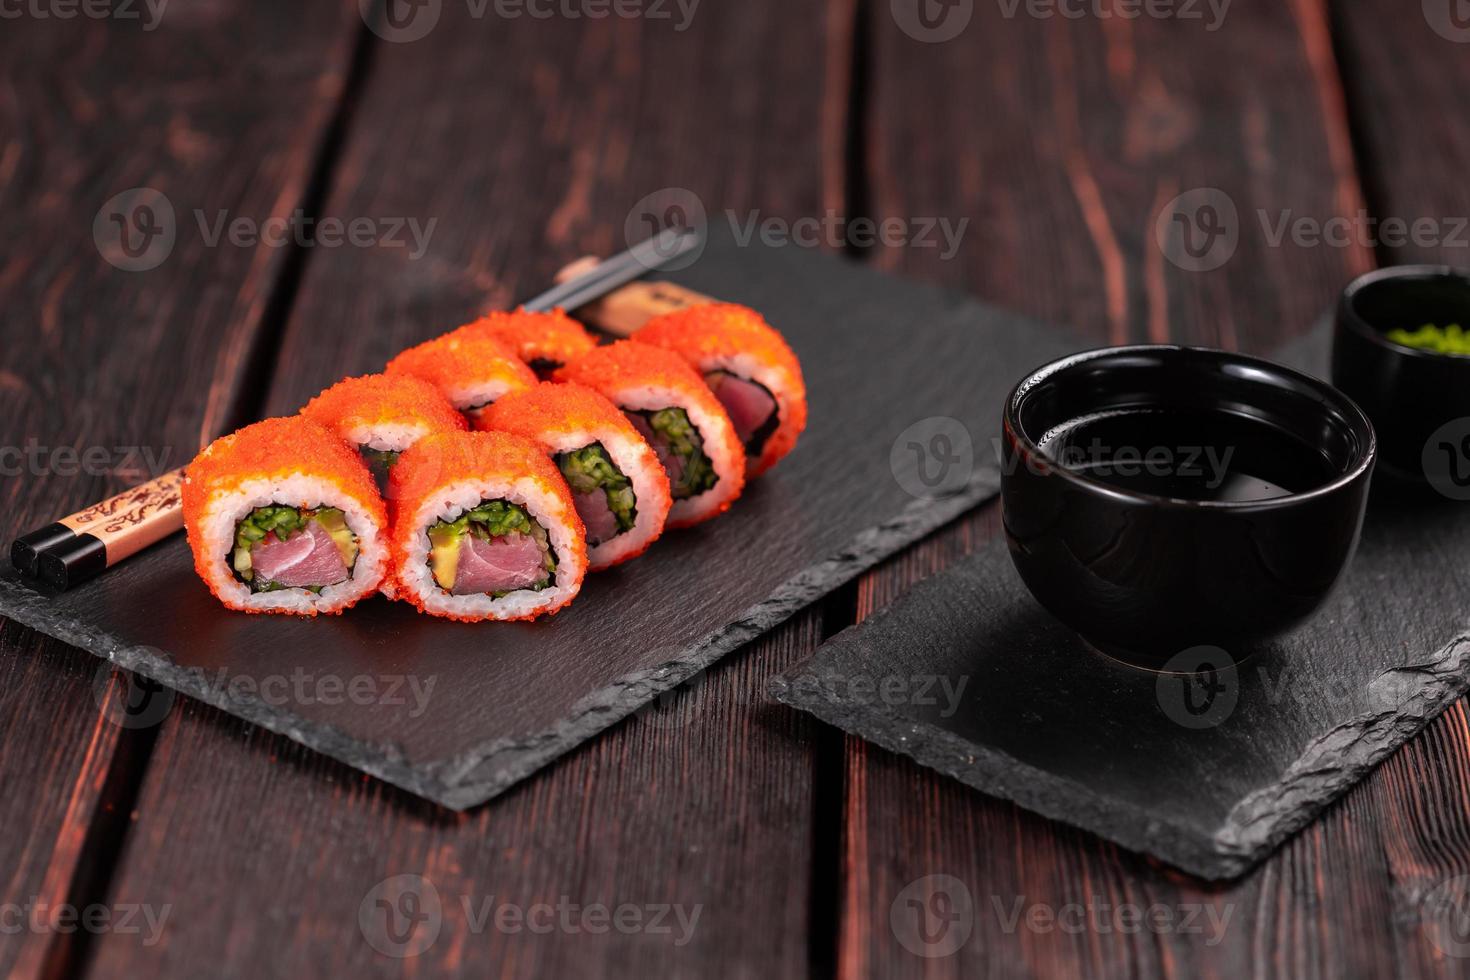 rolo de sushi da Califórnia com atum, pepino abacate e caviar tobiko servido em close-up de quadro negro - comida japonesa foto